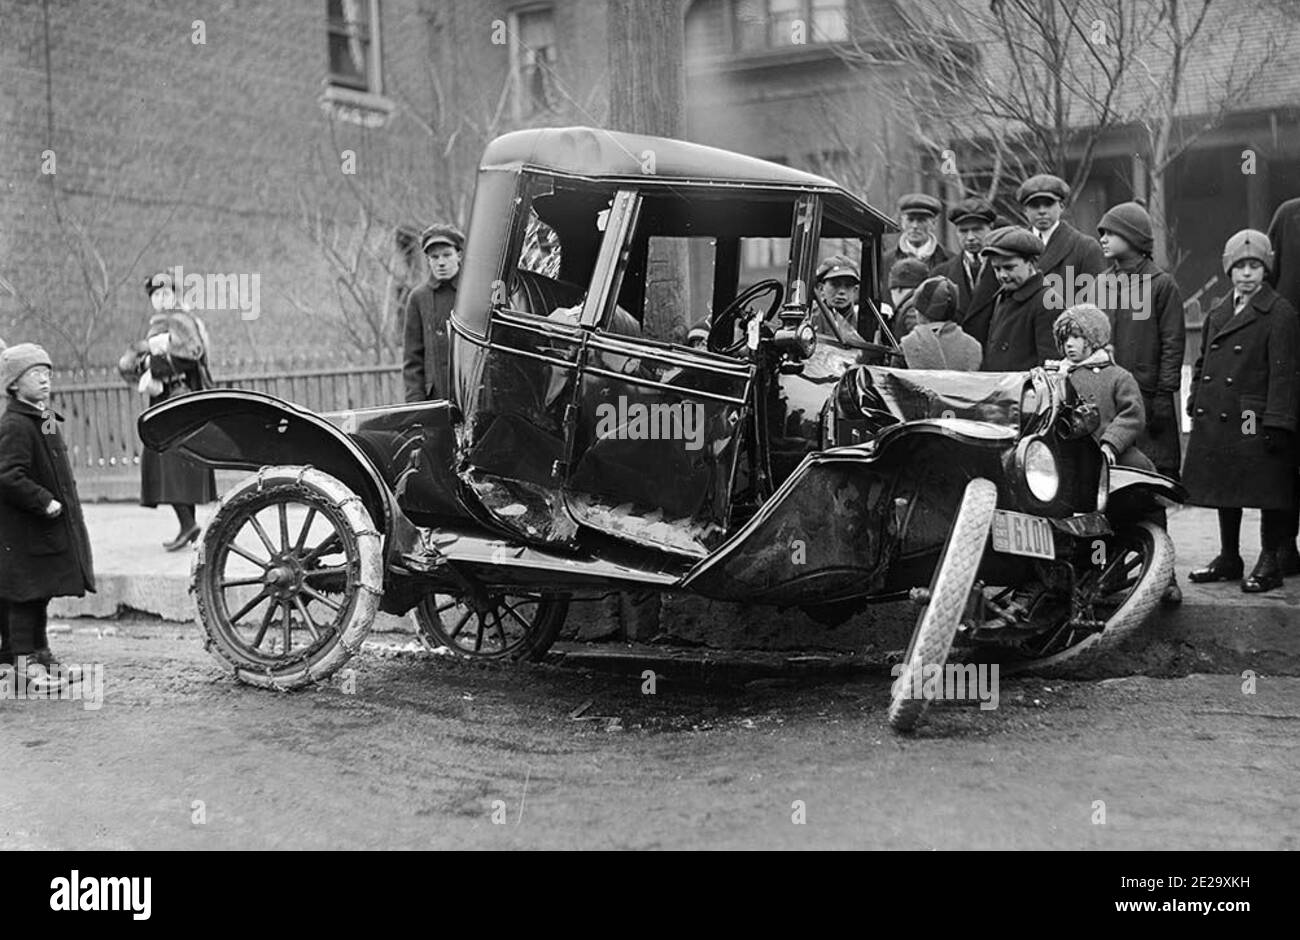 Vintage Schwarz-Weiß-Fotografie eines frühen Autounfalls in Toronto mit einer kleinen Menge Zuschauer. Wahrscheinlich der erste Autounfall, den sie gesehen haben. Stockfoto